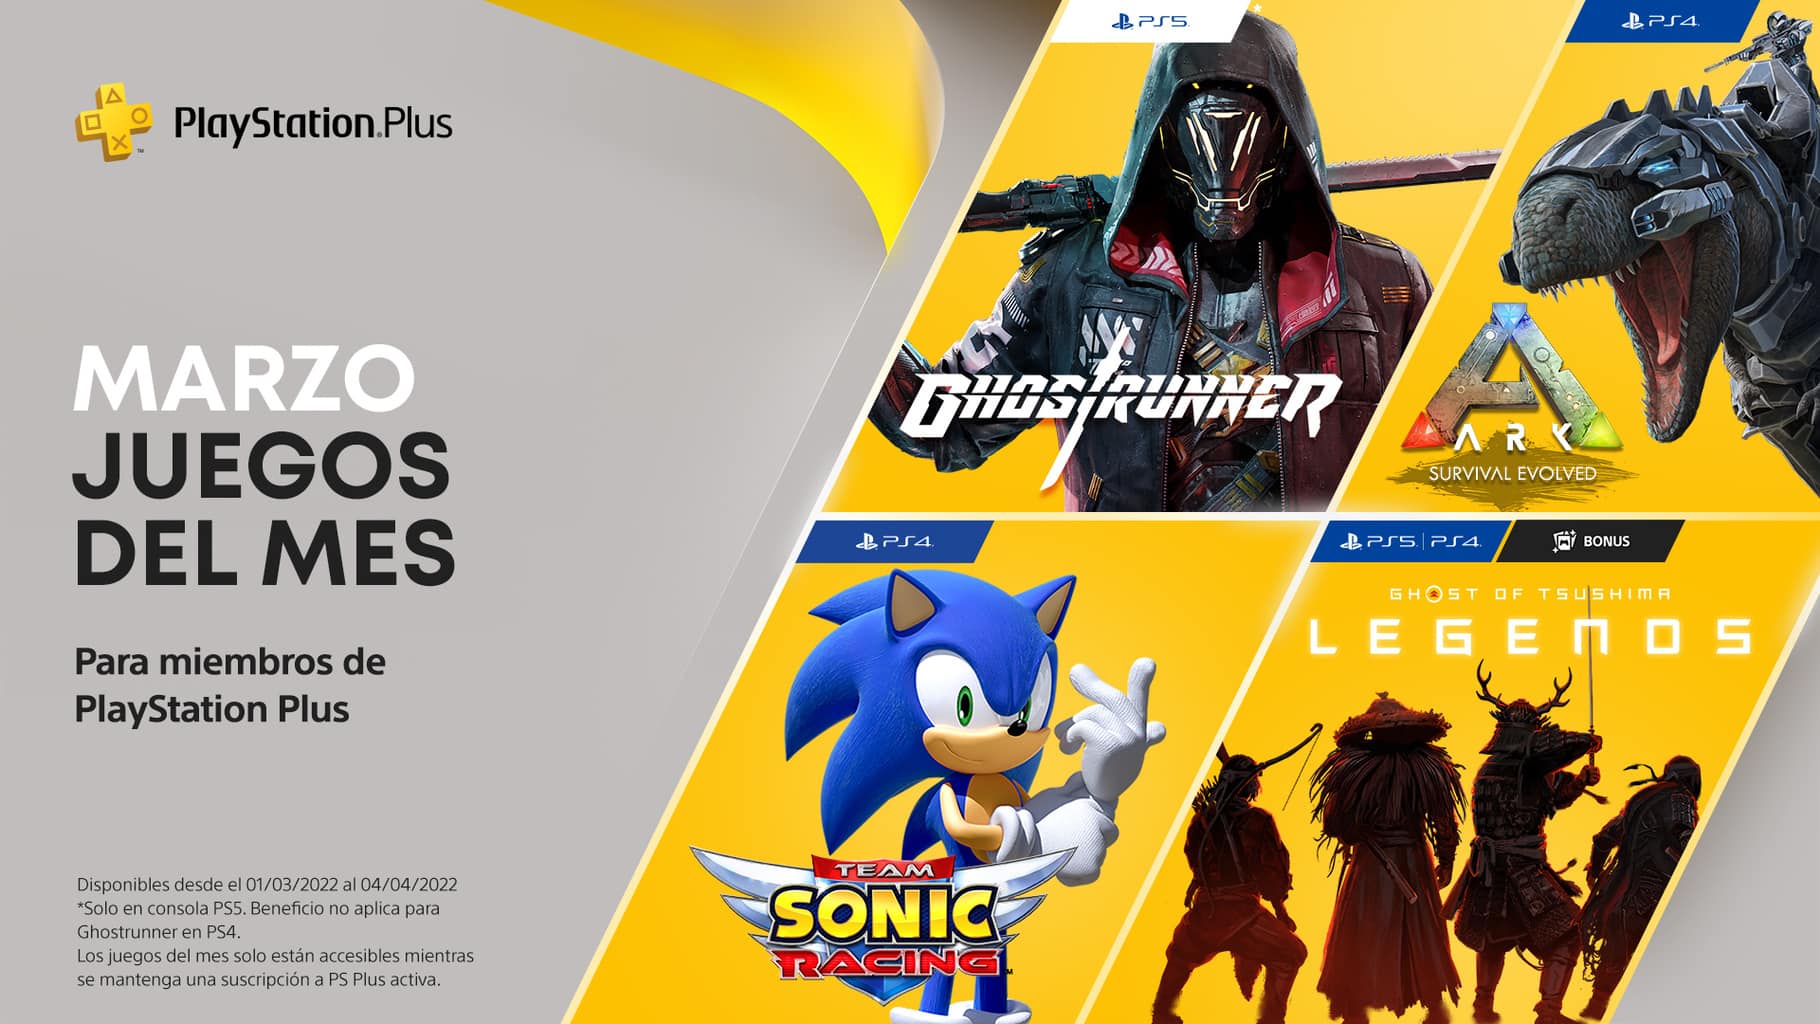 Desvelados los juegos de PlayStation Plus del mes de marzo